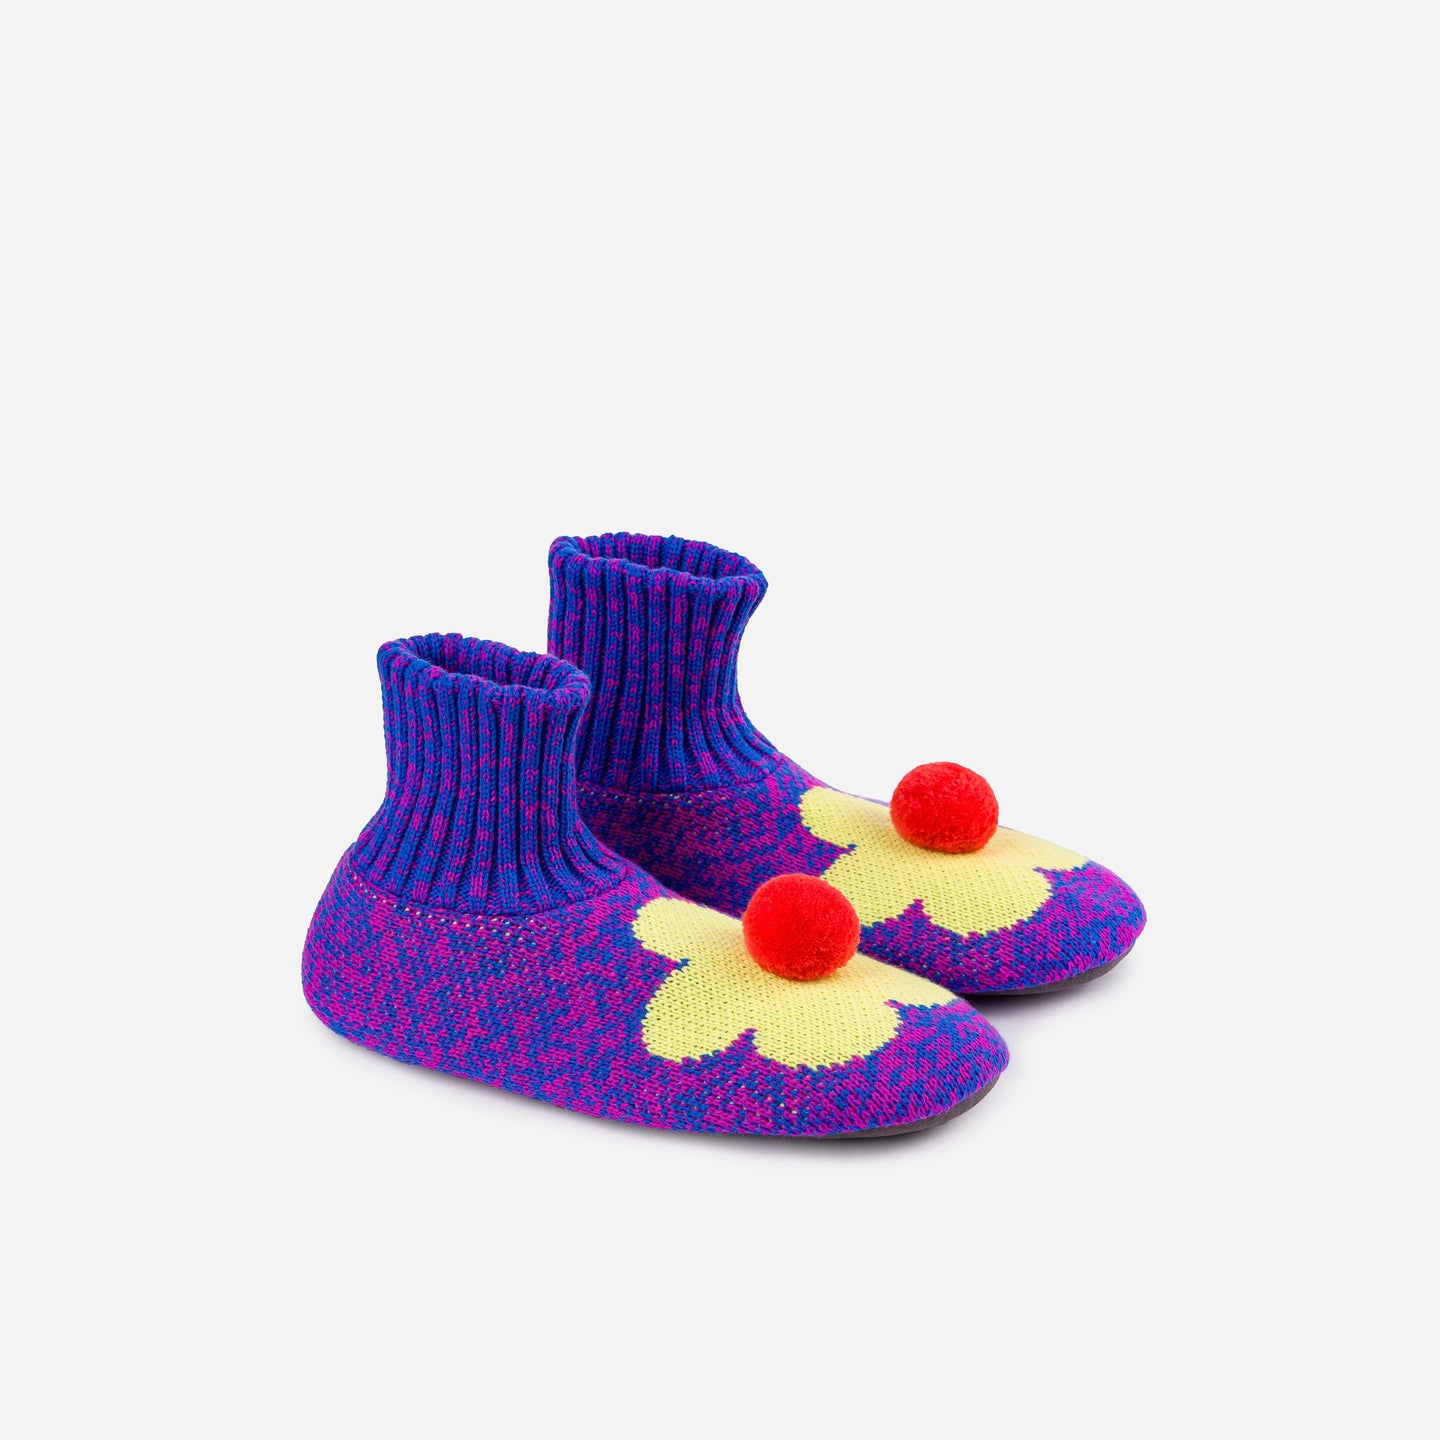 Knitted side view Magenta Cobalt Flower Sock Slipper Knit Pom